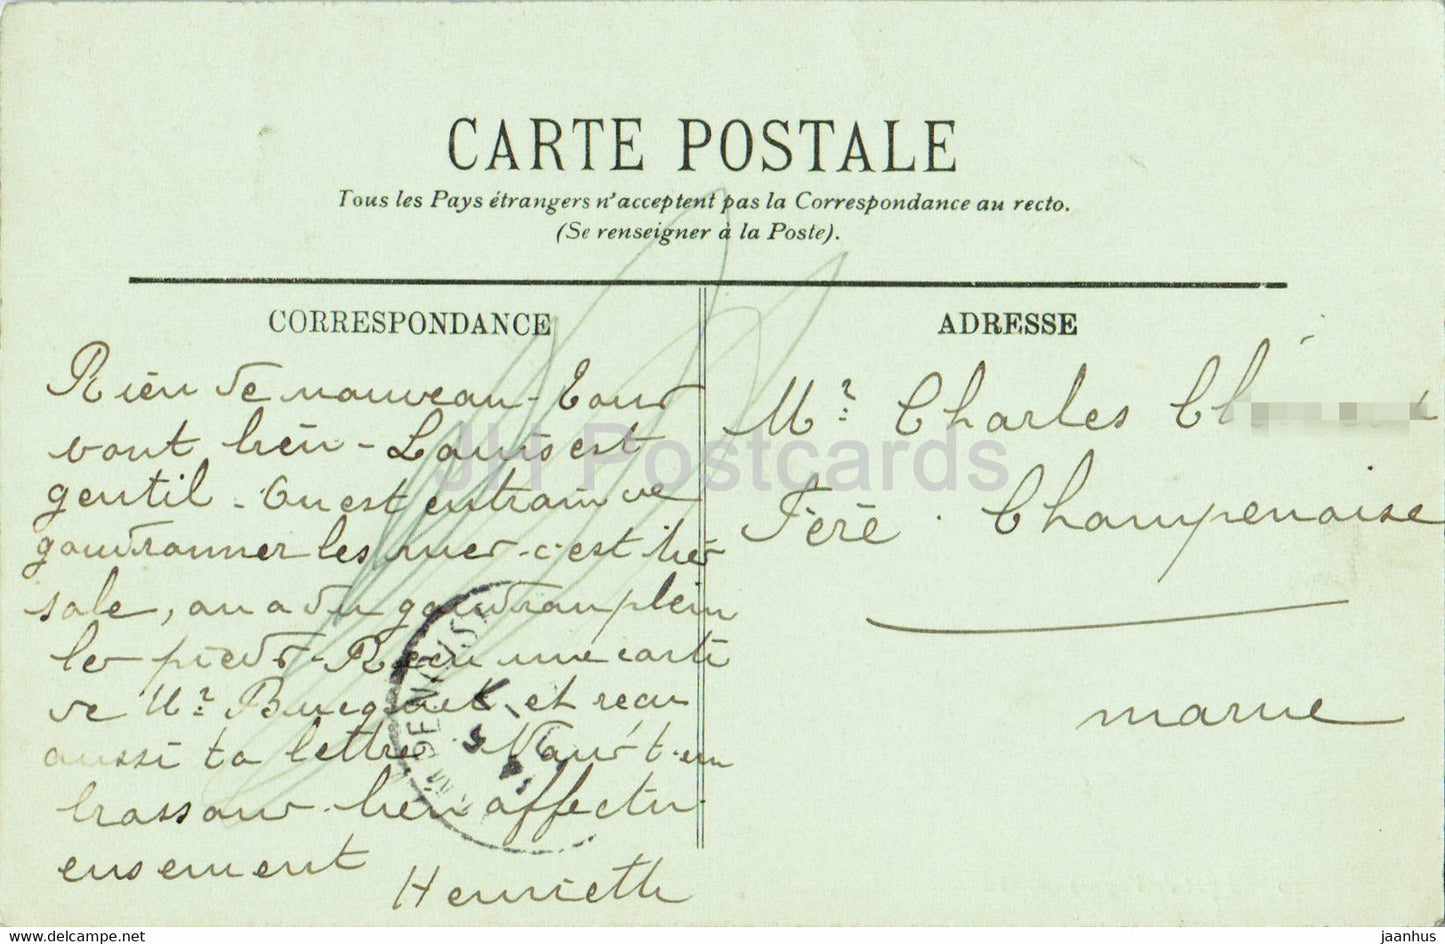 Effet de Vagues - 29 - LL - carte postale ancienne - 1909 - France - occasion